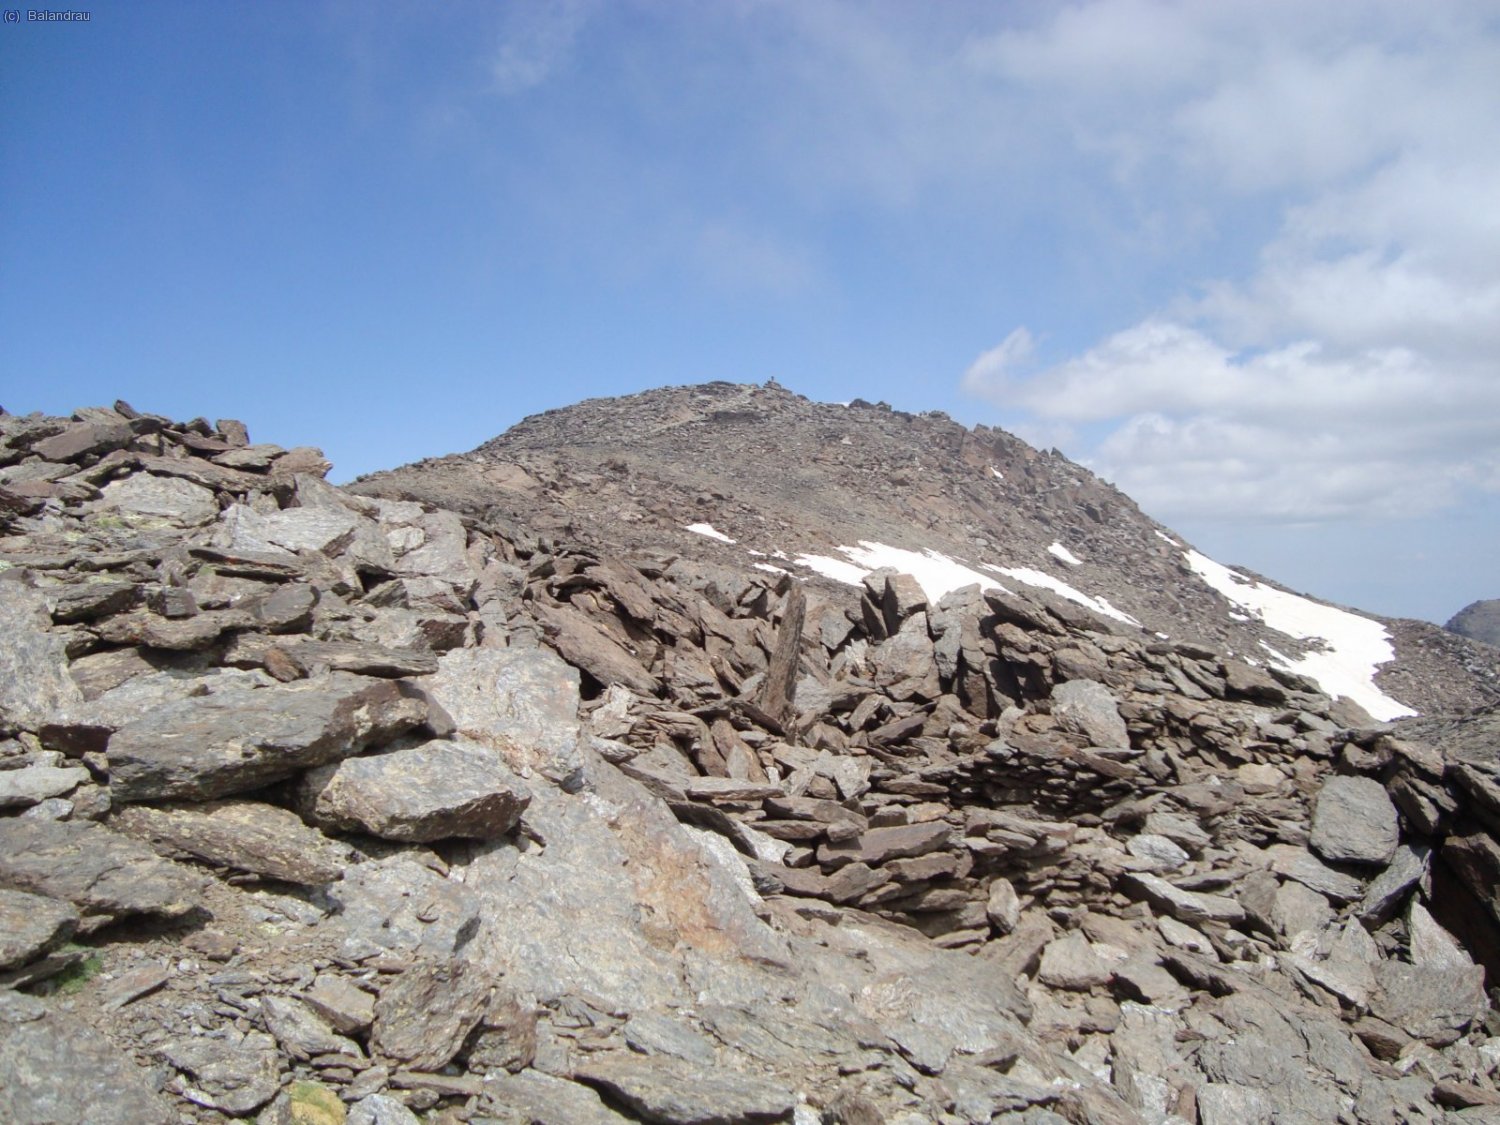 Ya podemos ver de cerca la cumbre de cumbres, El Mulhacén casi a tiro de piedra.